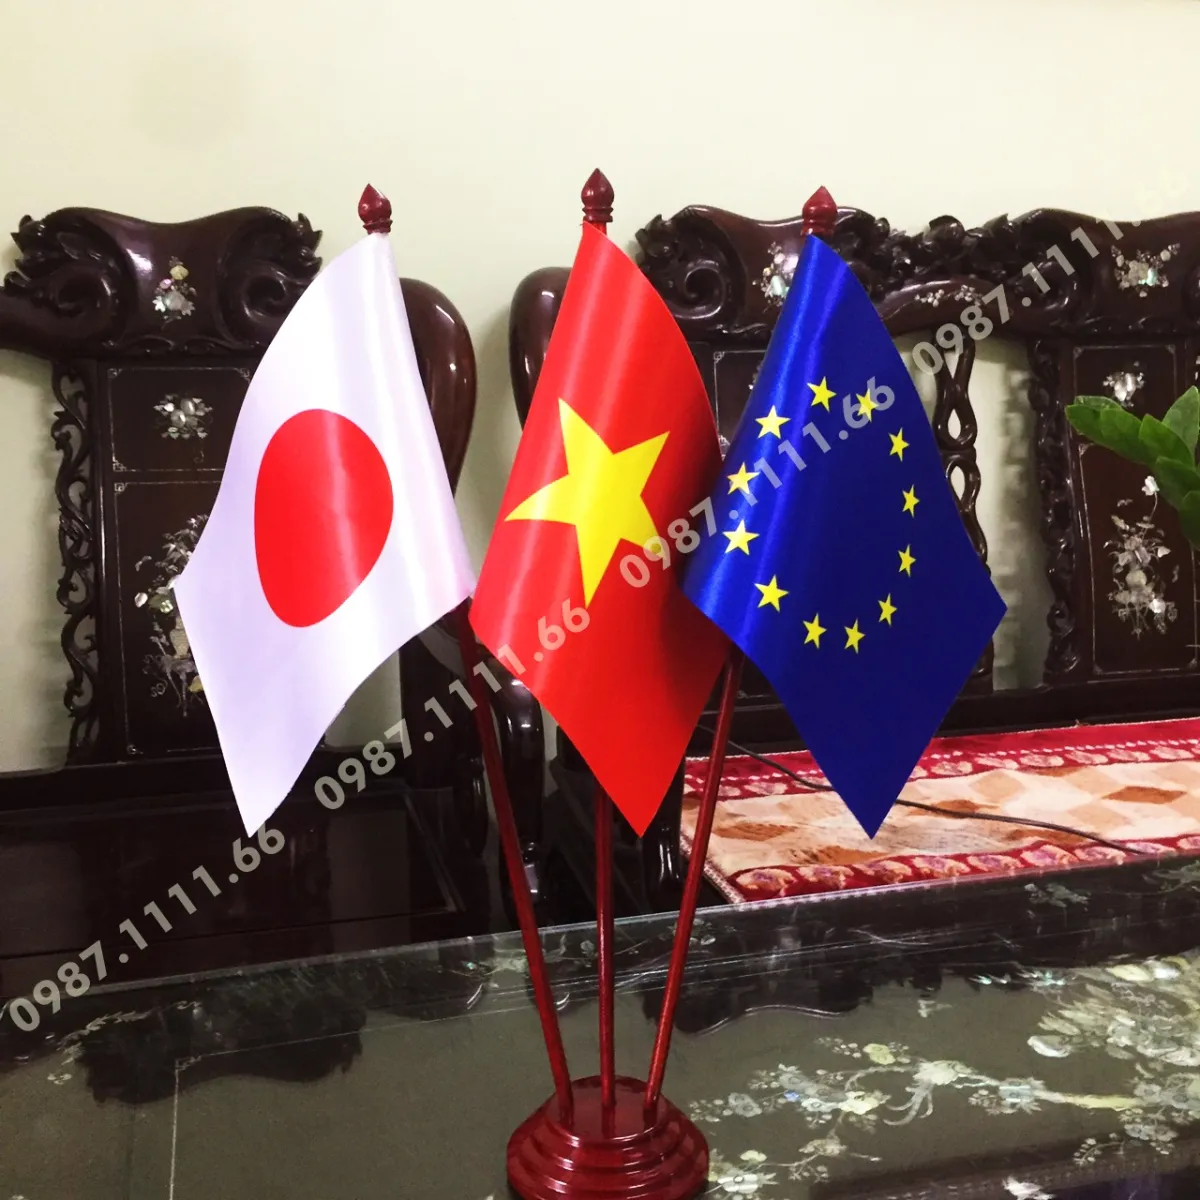 Cờ để bàn làm việc đế gỗ 3 cờ Việt Nam - Nhật Bản - EU:
Bạn có thích sự kết hợp giữa 3 quốc kỳ Việt Nam - Nhật Bản - EU trên một đế cờ gỗ sang trọng để để bàn làm việc của mình? Đây là sản phẩm độc đáo, có thể dùng làm quà tặng cho đối tác quốc tế, hoặc sử dụng trong các cuộc họp, gặp mặt quan trọng. Đảm bảo mang đến cho bạn sự lịch lãm, đẳng cấp và tôn vinh sự đa dạng văn hóa của các quốc gia.